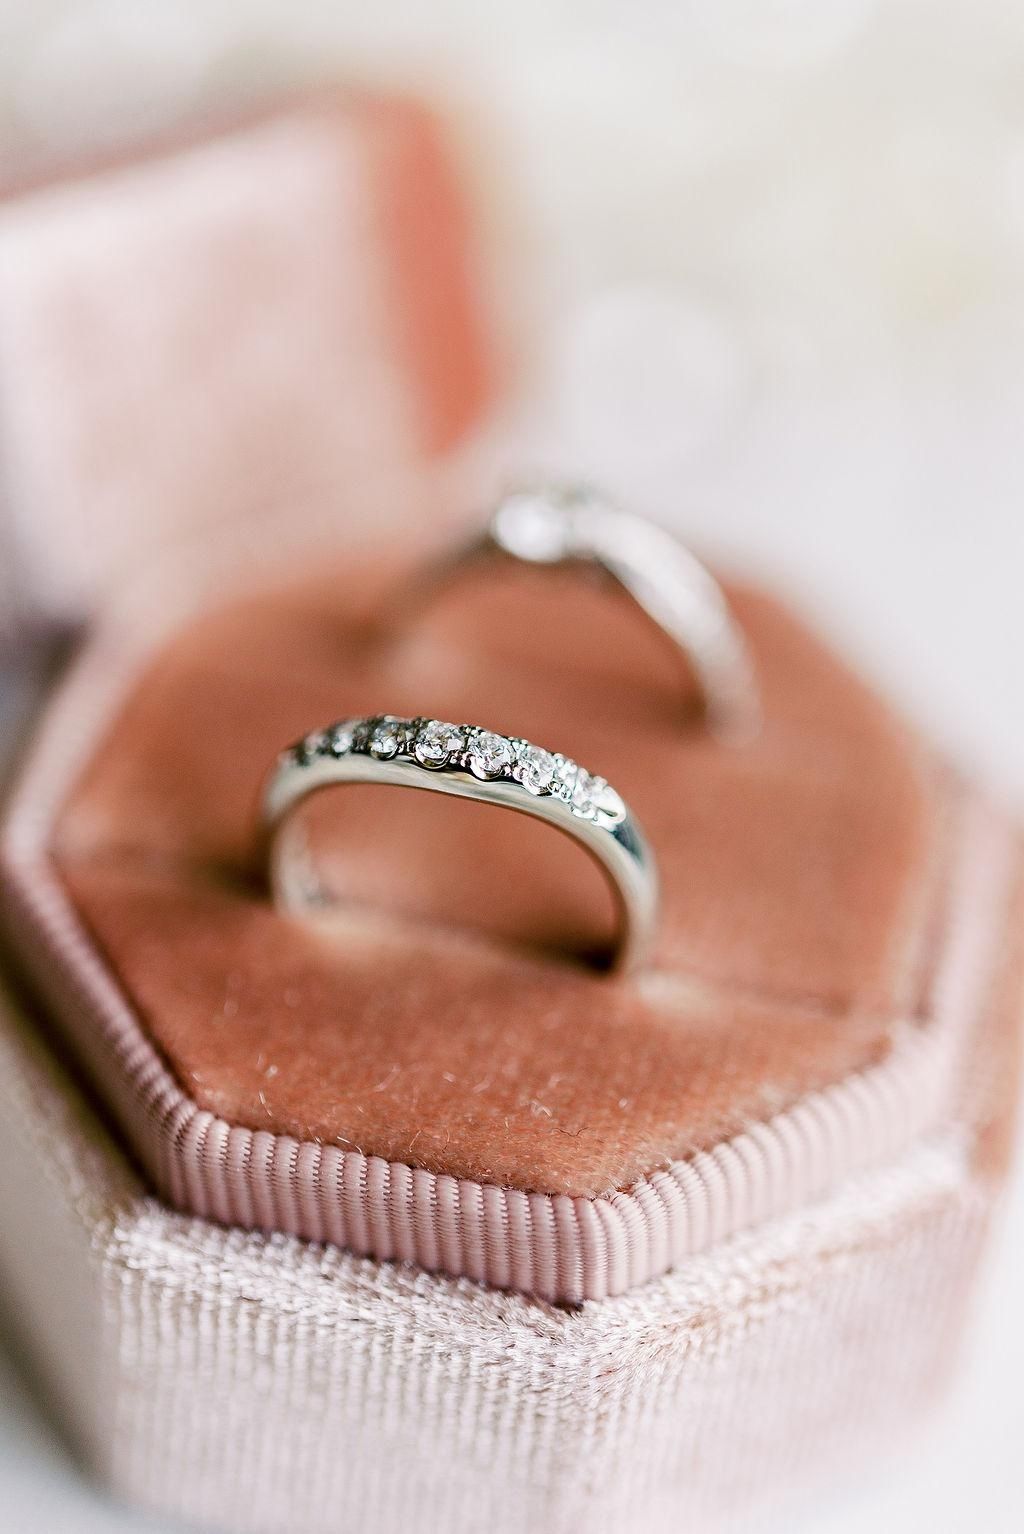 結婚指輪は幅選びも重要って知ってた 各リング幅の特徴を詳しく紹介 結婚式準備はウェディングニュース